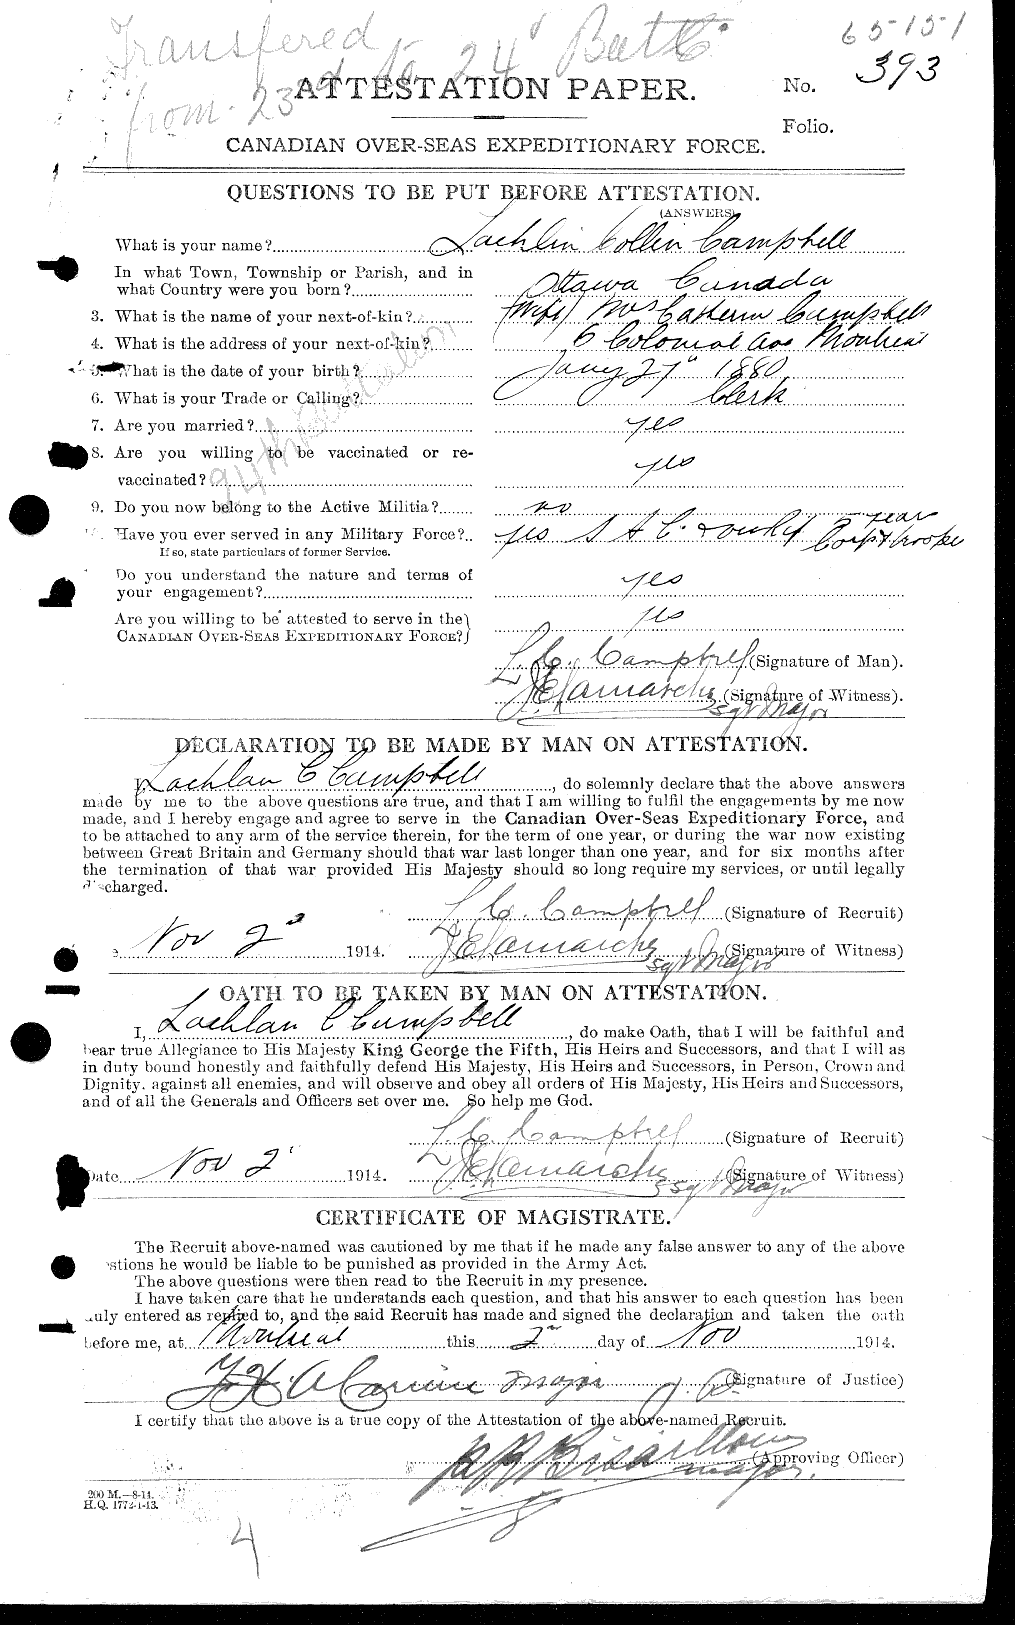 Dossiers du Personnel de la Première Guerre mondiale - CEC 002776a